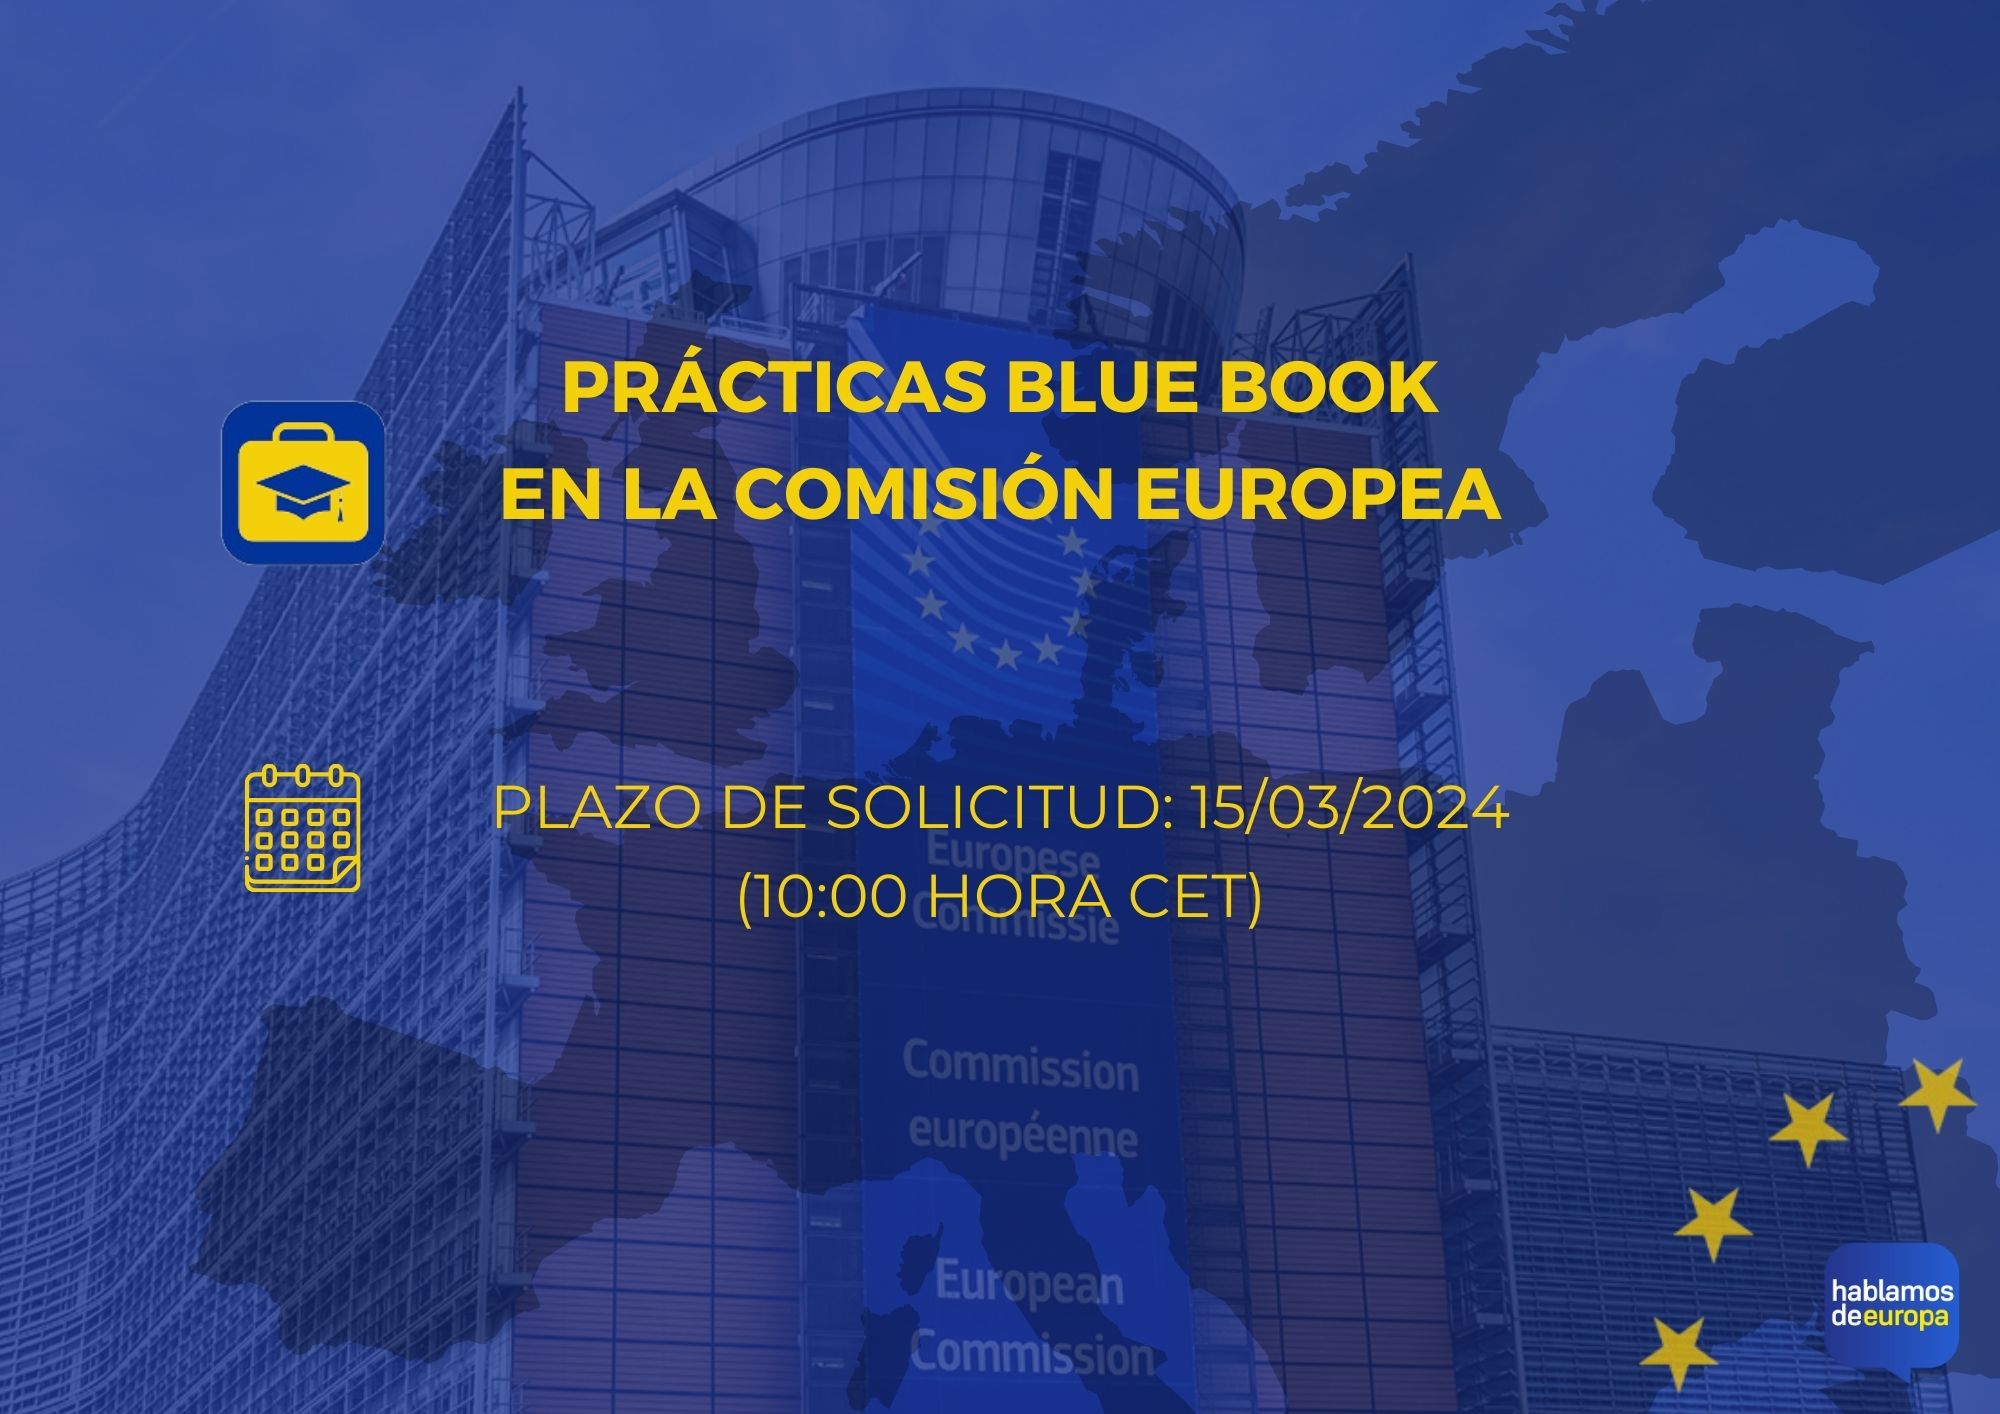 Prcticas Blue Book en la Comisin Europea - Hablamos de Europa